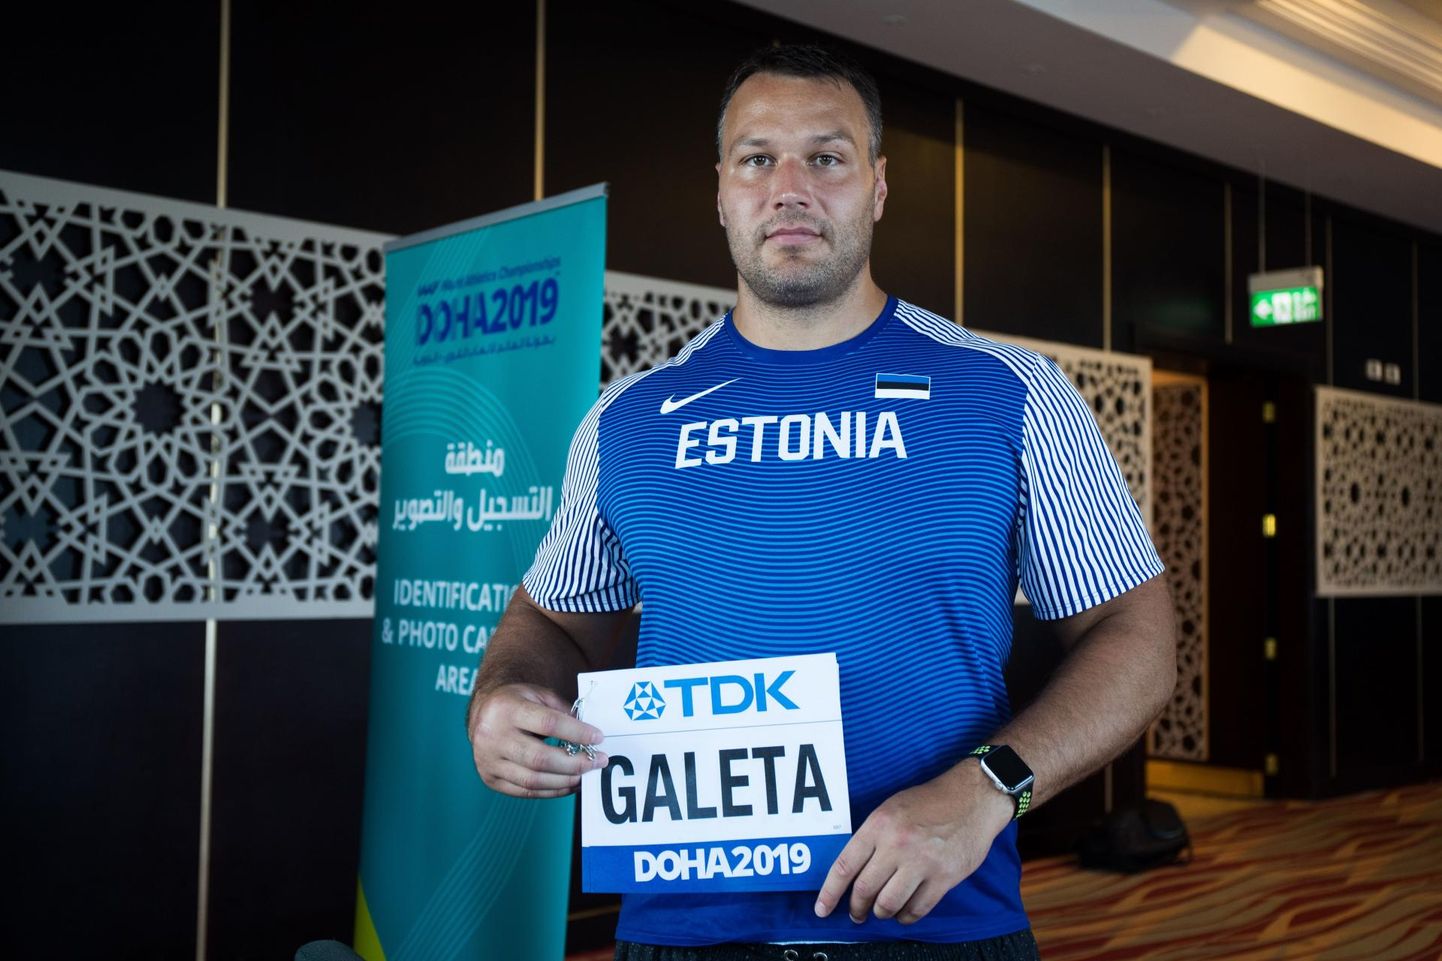 Kaks aastat tagasi jõudis Kristo Galeta kergejõustiku maailmameistrivõistlustele Katari pealinnas Dohas, aga vigastas end enne võistlust.